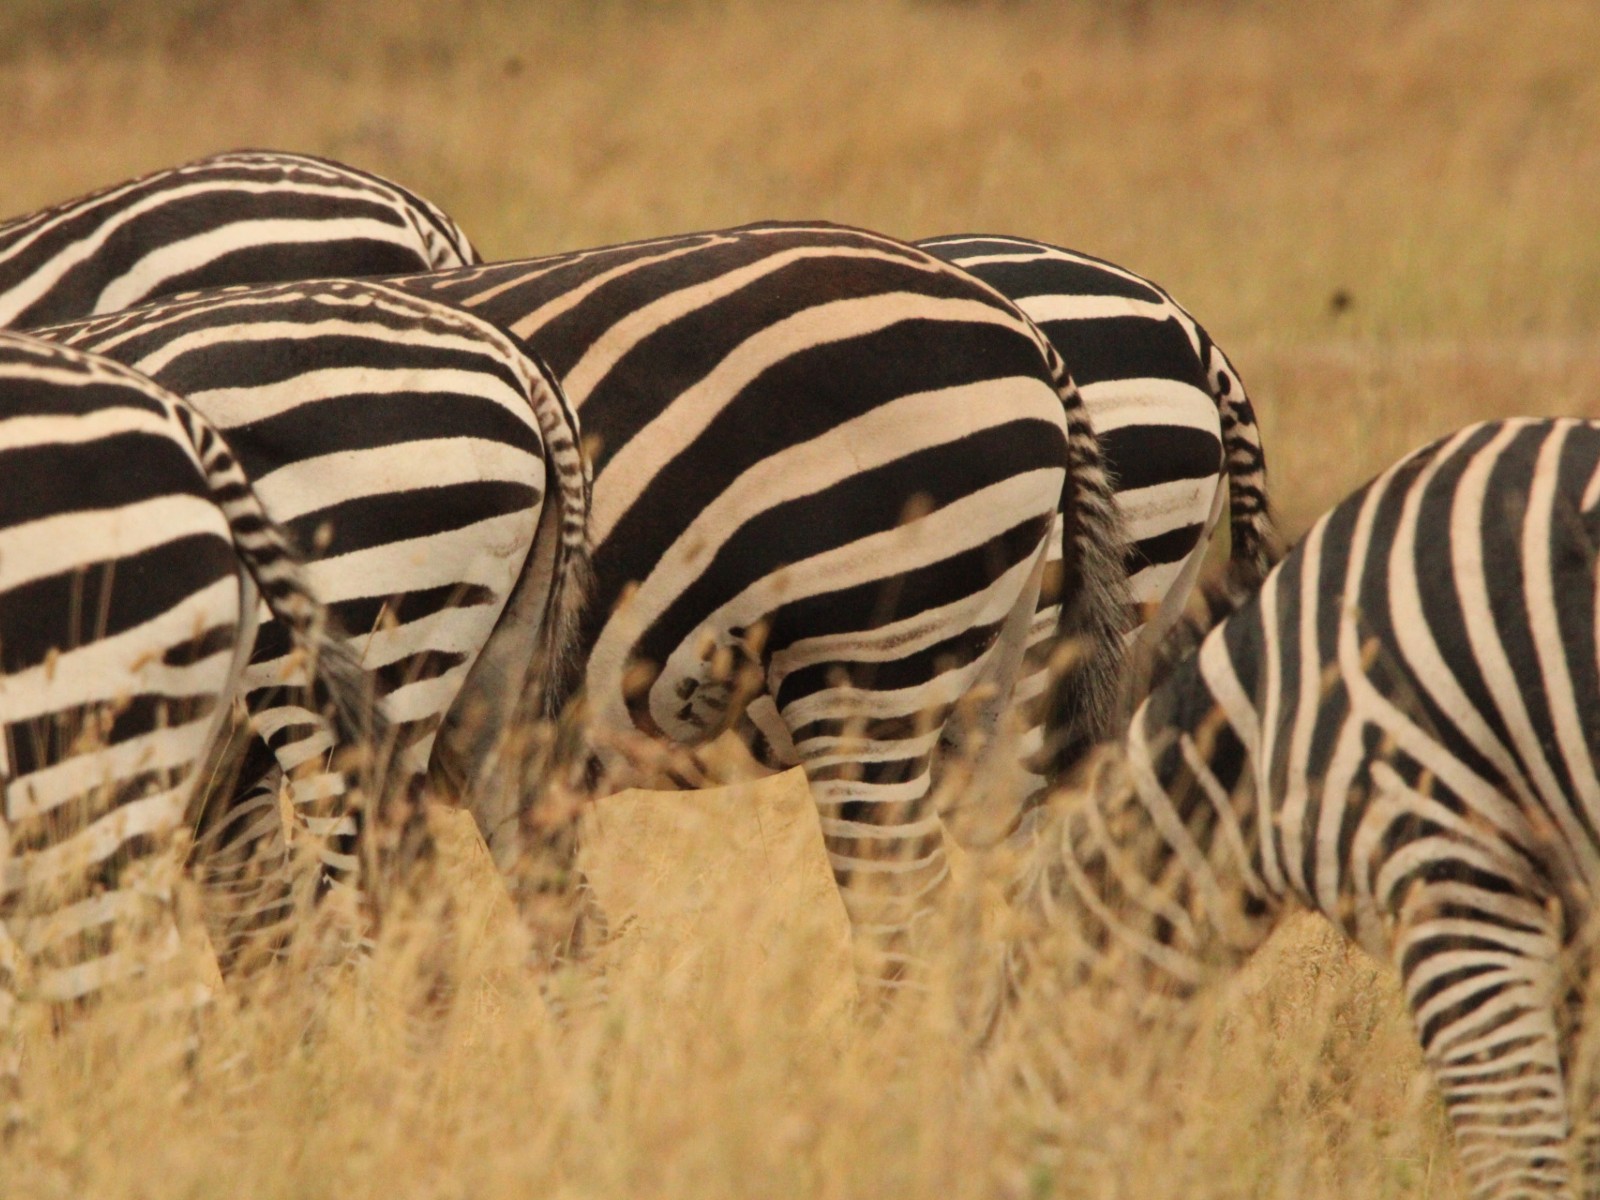 Some zebras.